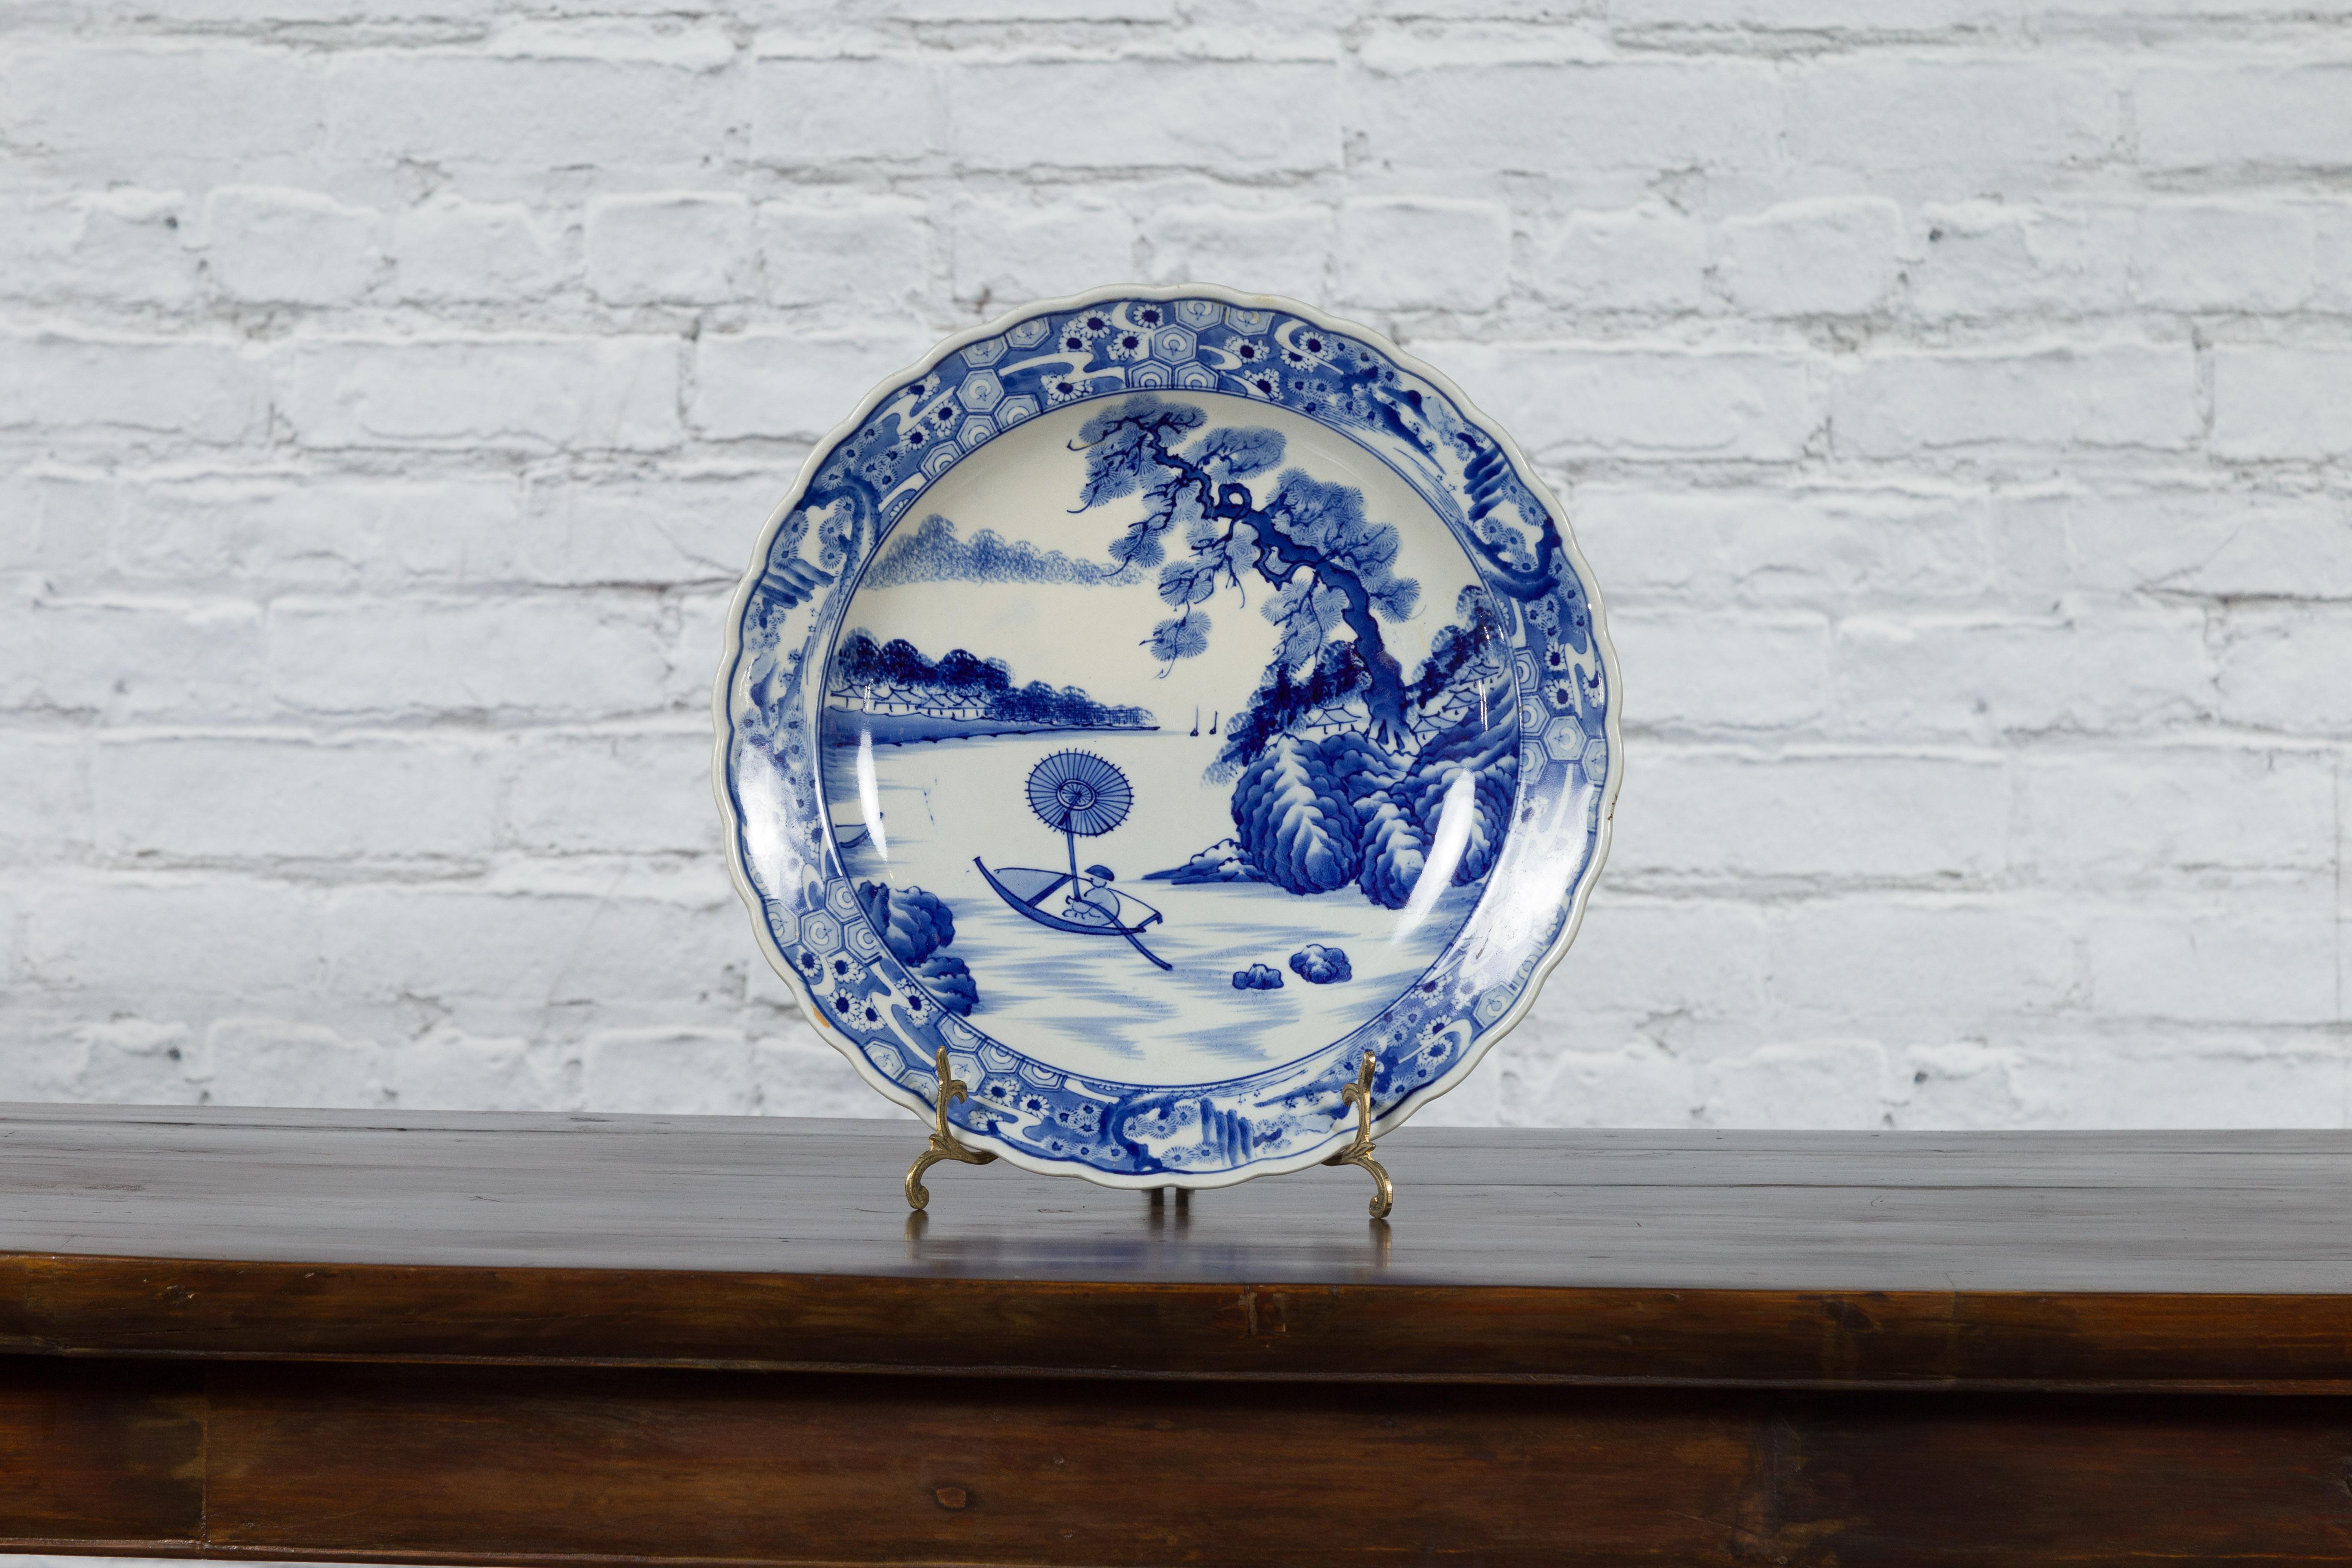 Assiette de présentation en porcelaine japonaise Imari du XIXe siècle, avec un décor bleu et blanc peint à la main représentant un homme ramant sur un bateau. Créée au Japon au XIXe siècle, cette assiette de présentation en porcelaine Imari présente